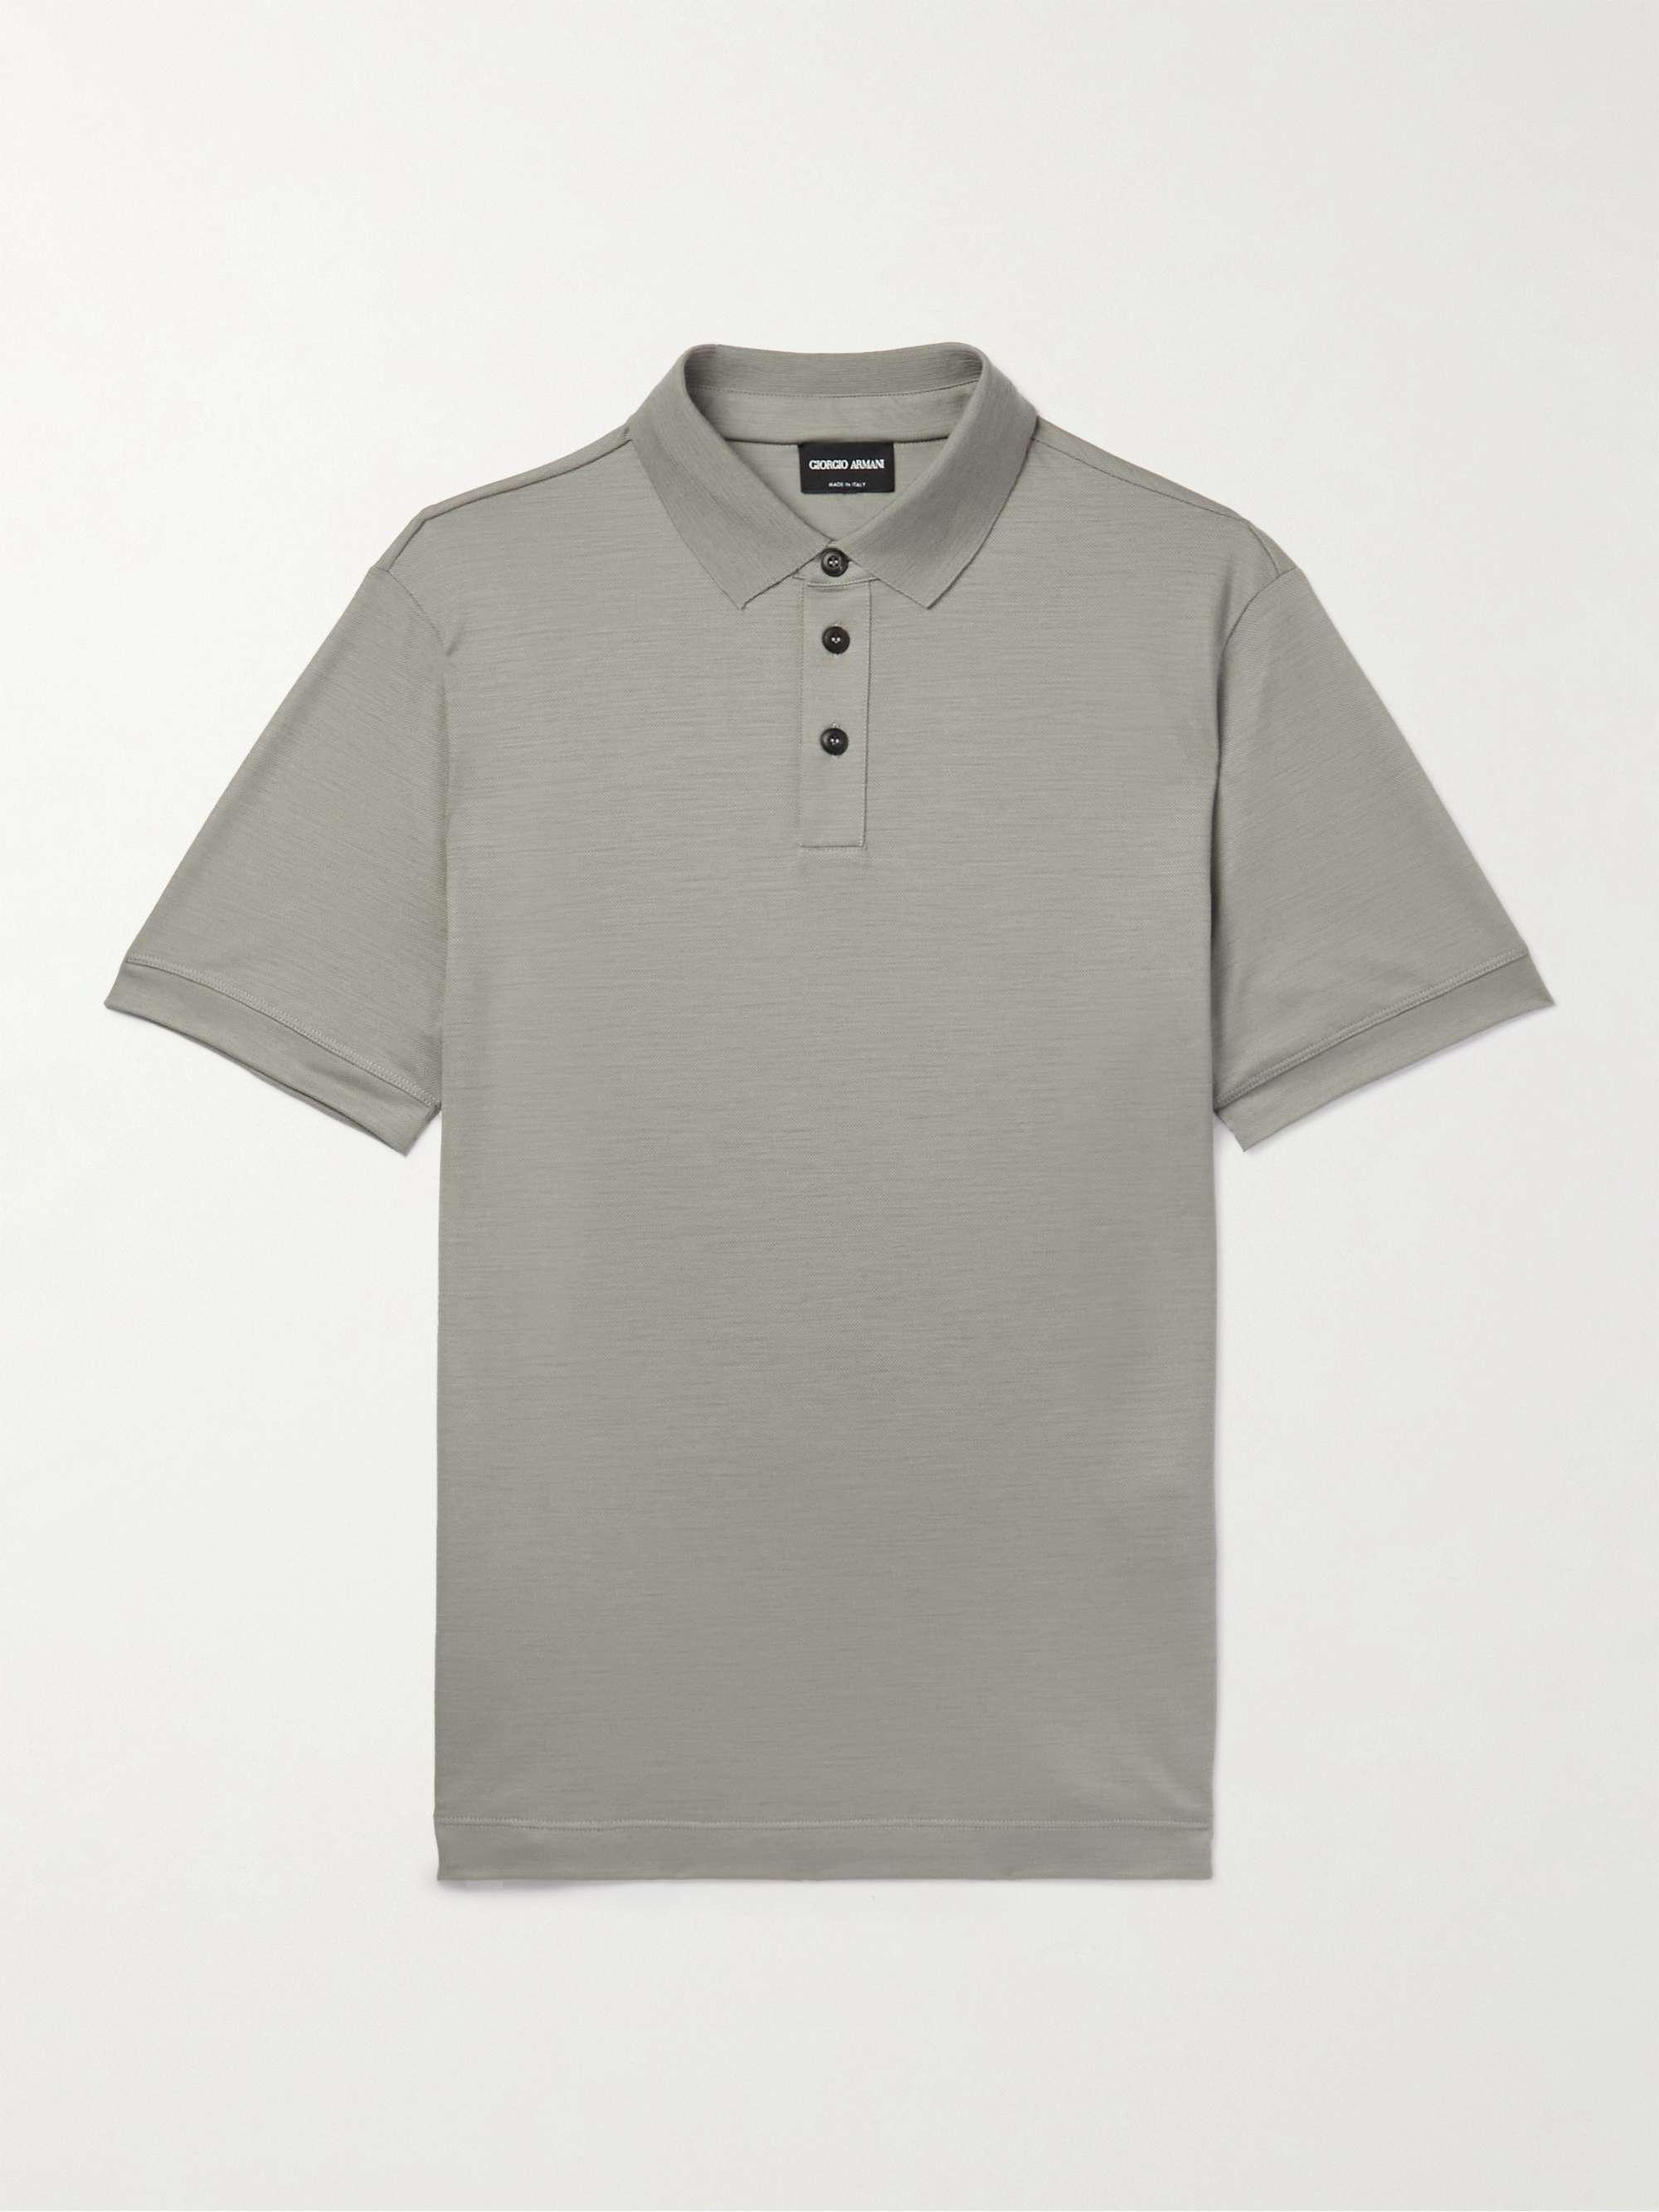 GIORGIO ARMANI Wool-Piqué Polo Shirt for Men | MR PORTER